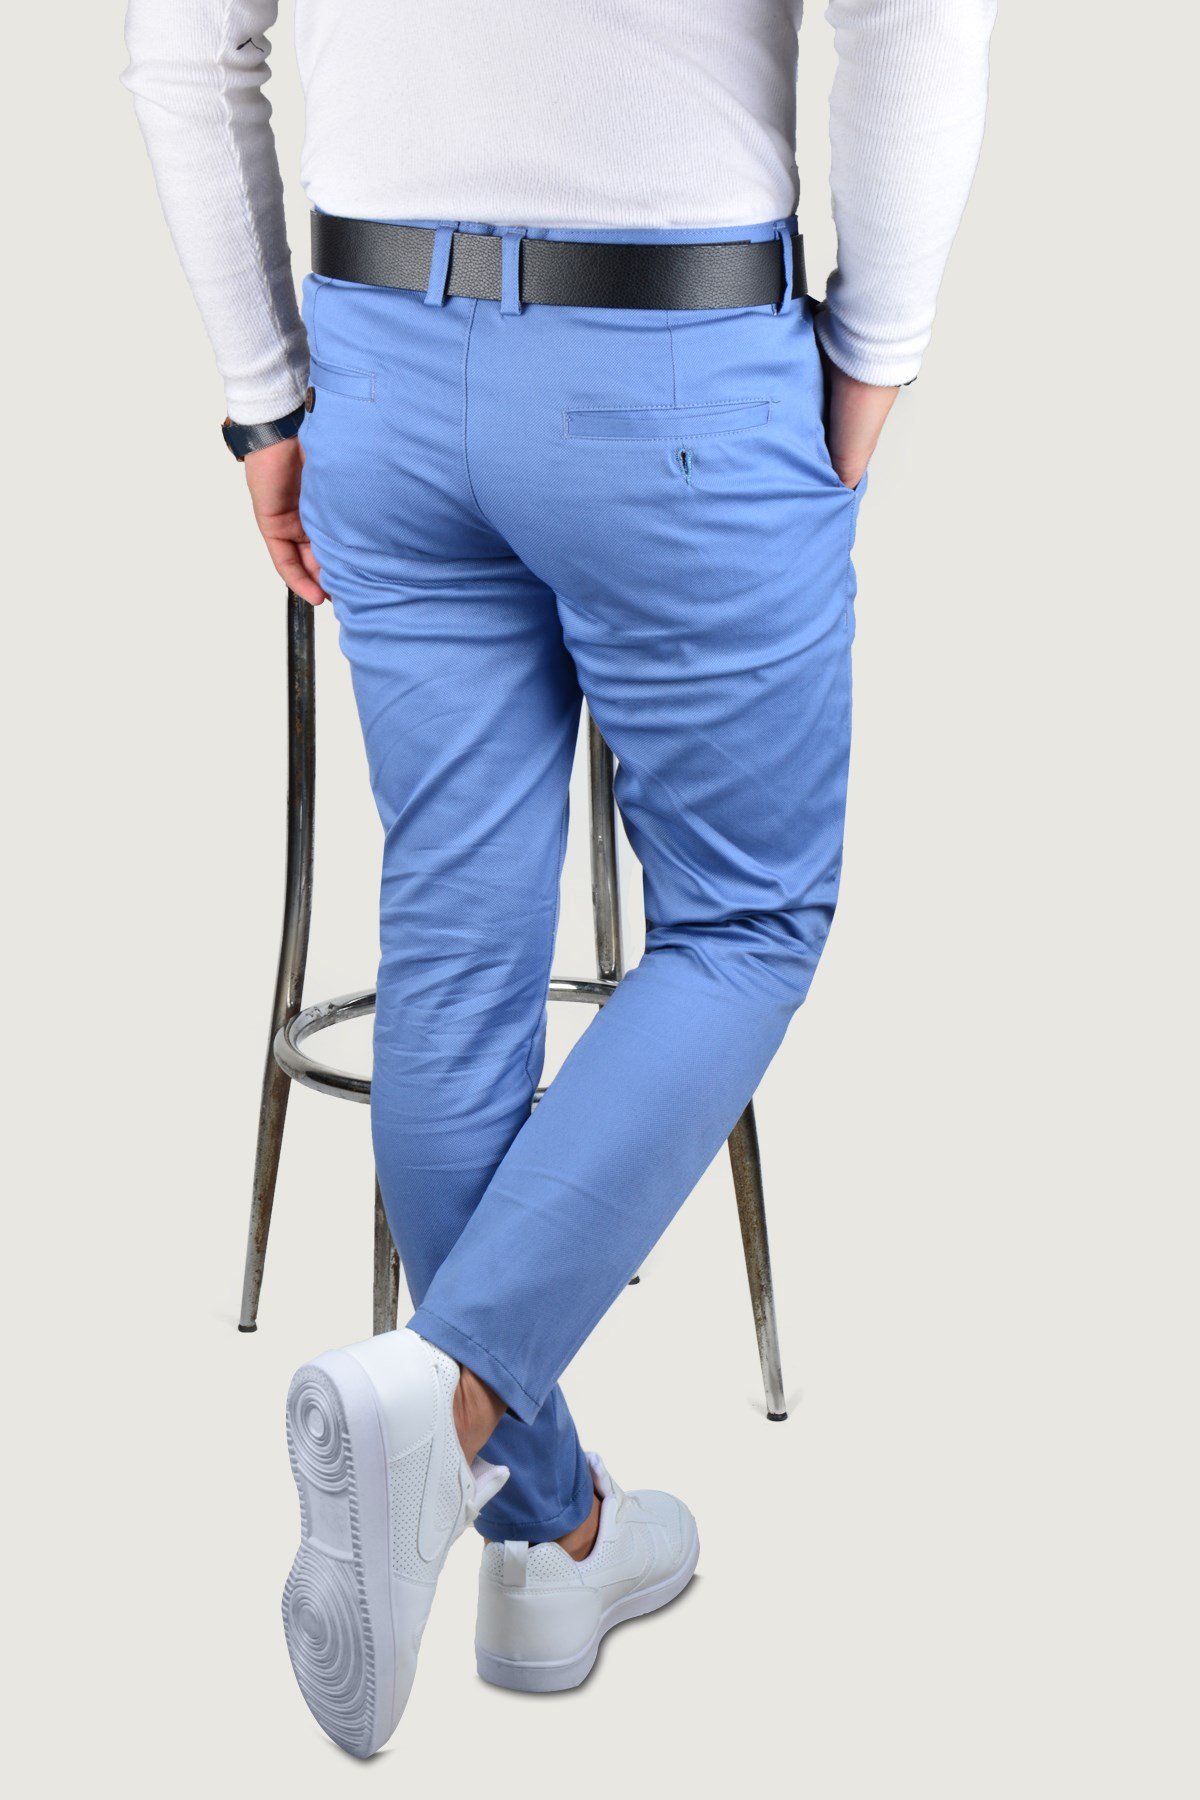 Erkek Keten Pantolon 9Y-2200203-013 Açık Mavi | Terapi Giyim